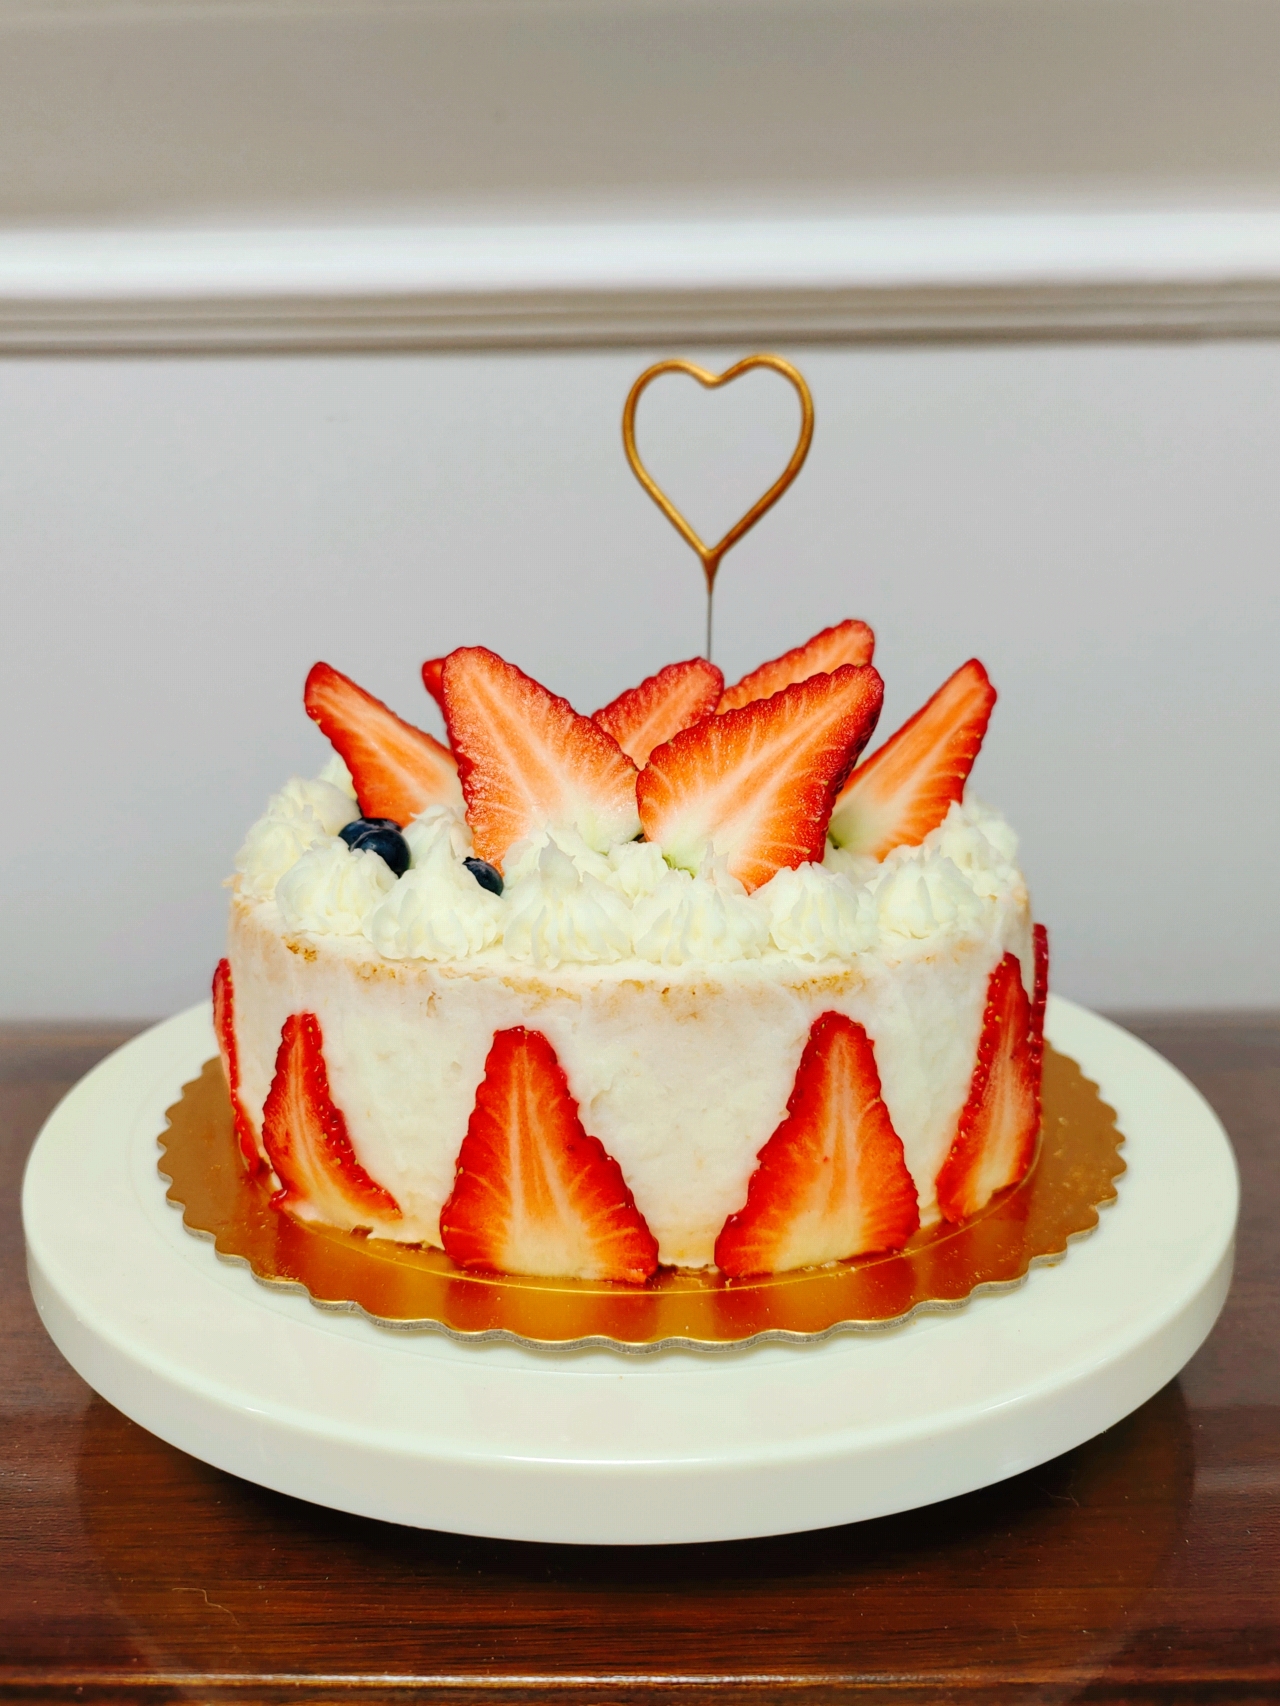 一岁宝宝也能大口吃•草莓山药蛋糕🍓•电饭锅版宝宝周岁生日蛋糕